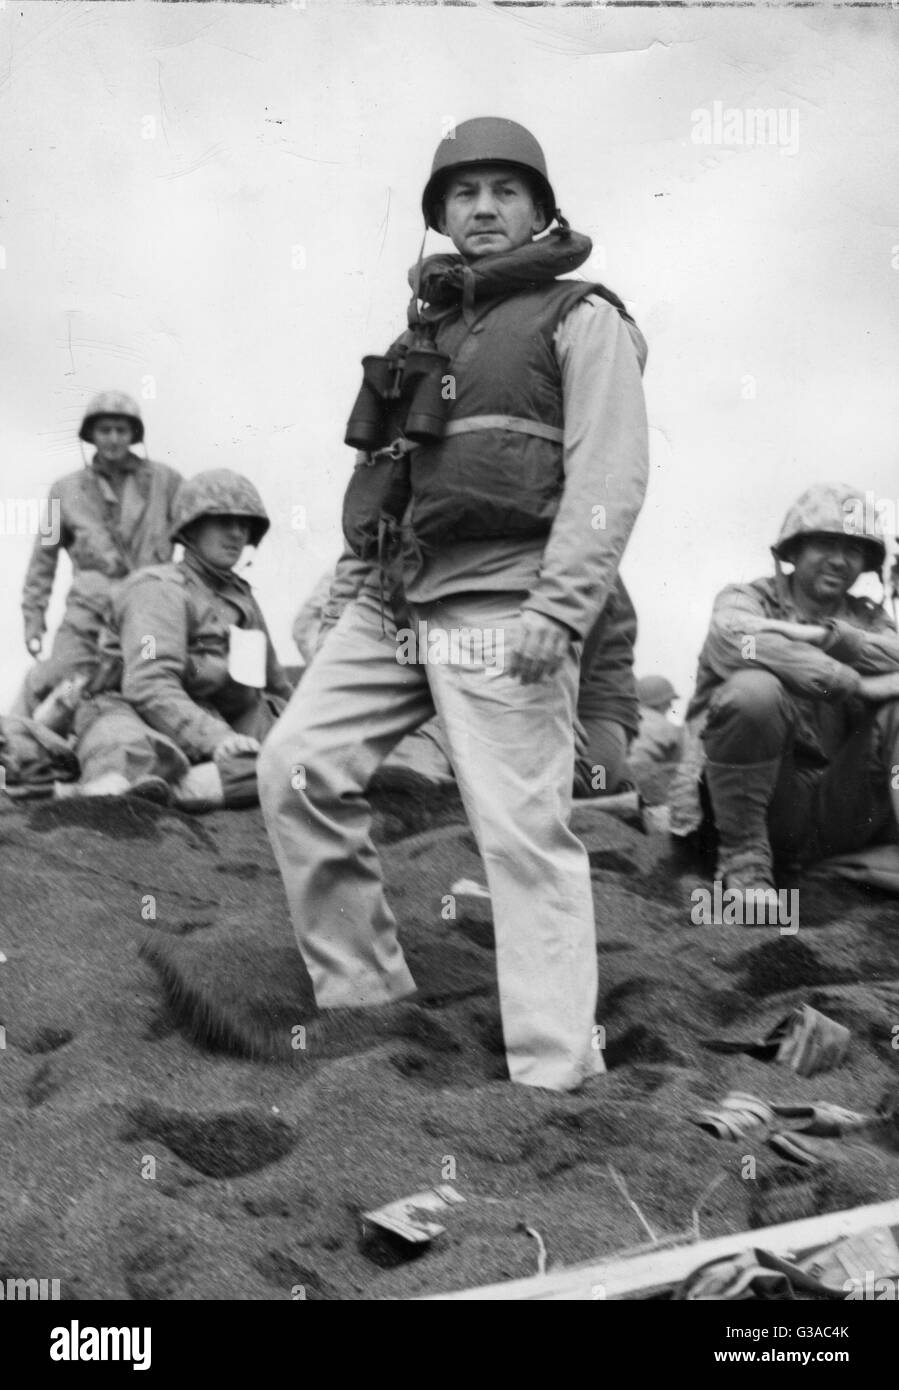 US Secretary Of The Navy James V. Forrestal inspiziert die Iwo Jima Brückenkopf, kurz nach der US-Marines landeten am 18. Februar 1945 und ihre Position gesichert. Stockfoto